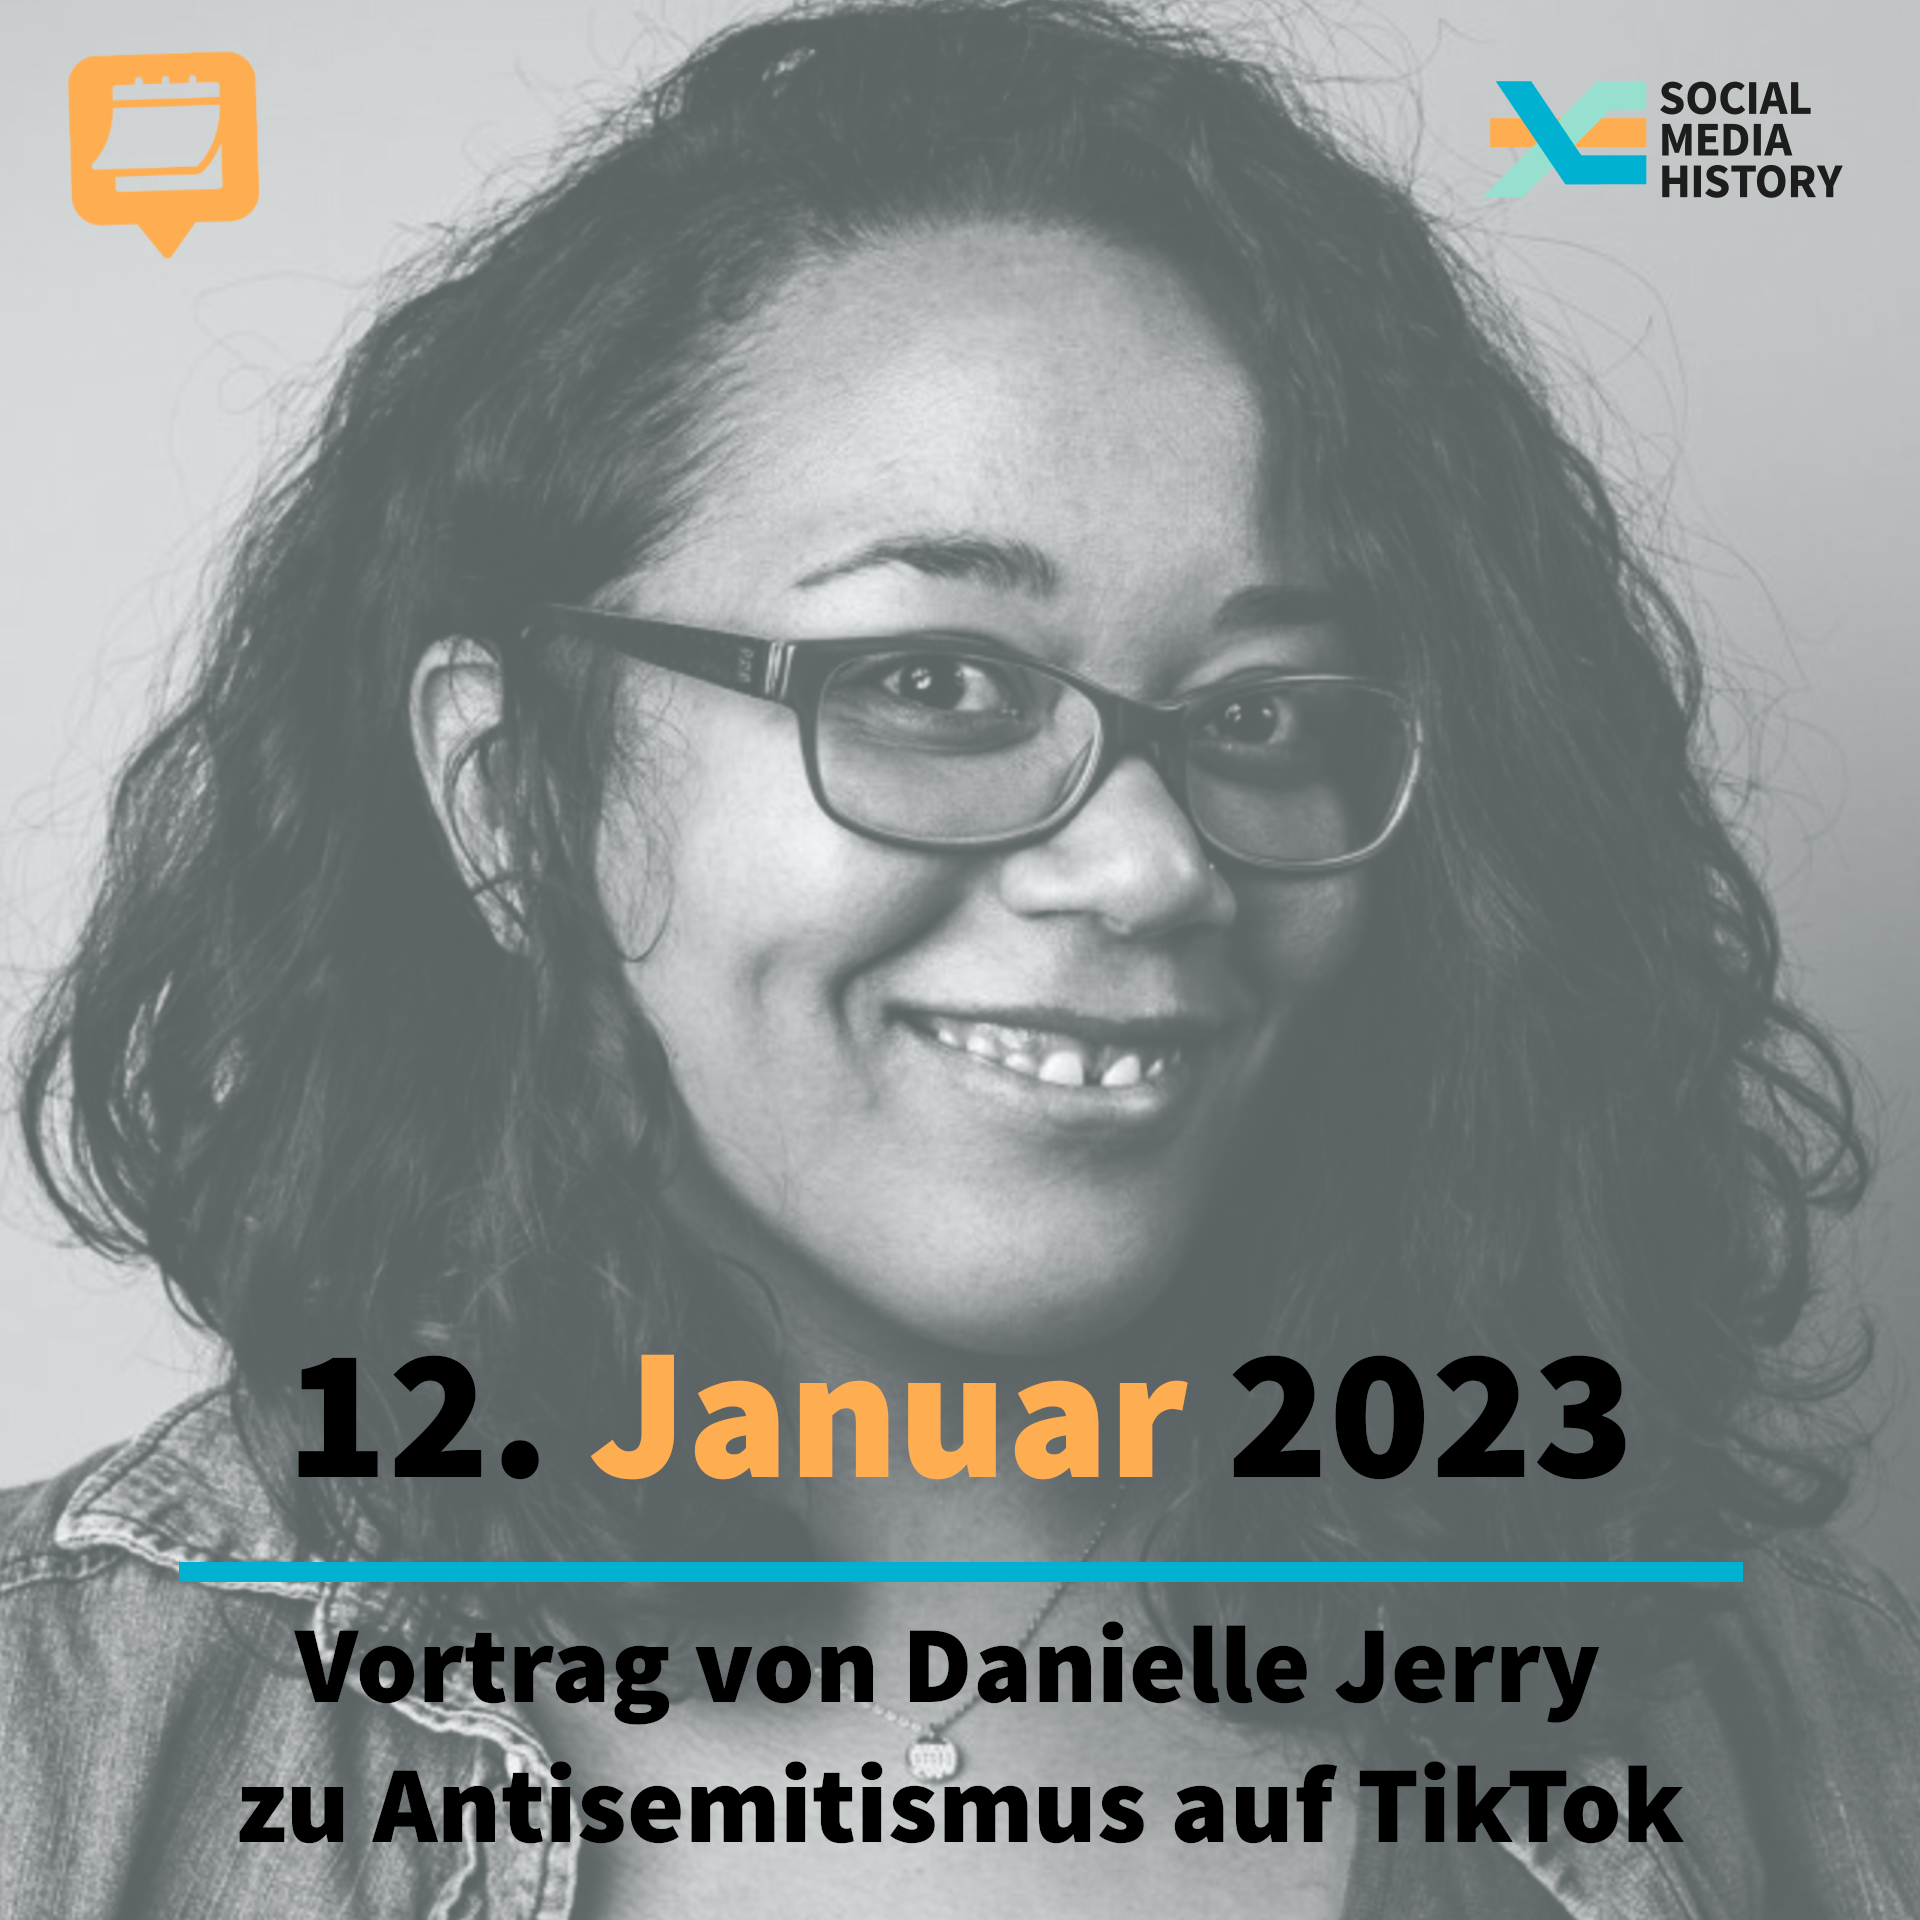 Ankündigung Vortrag über Antisemitismus auf TikTok von Danielle Jerry am 12. januar 2023.